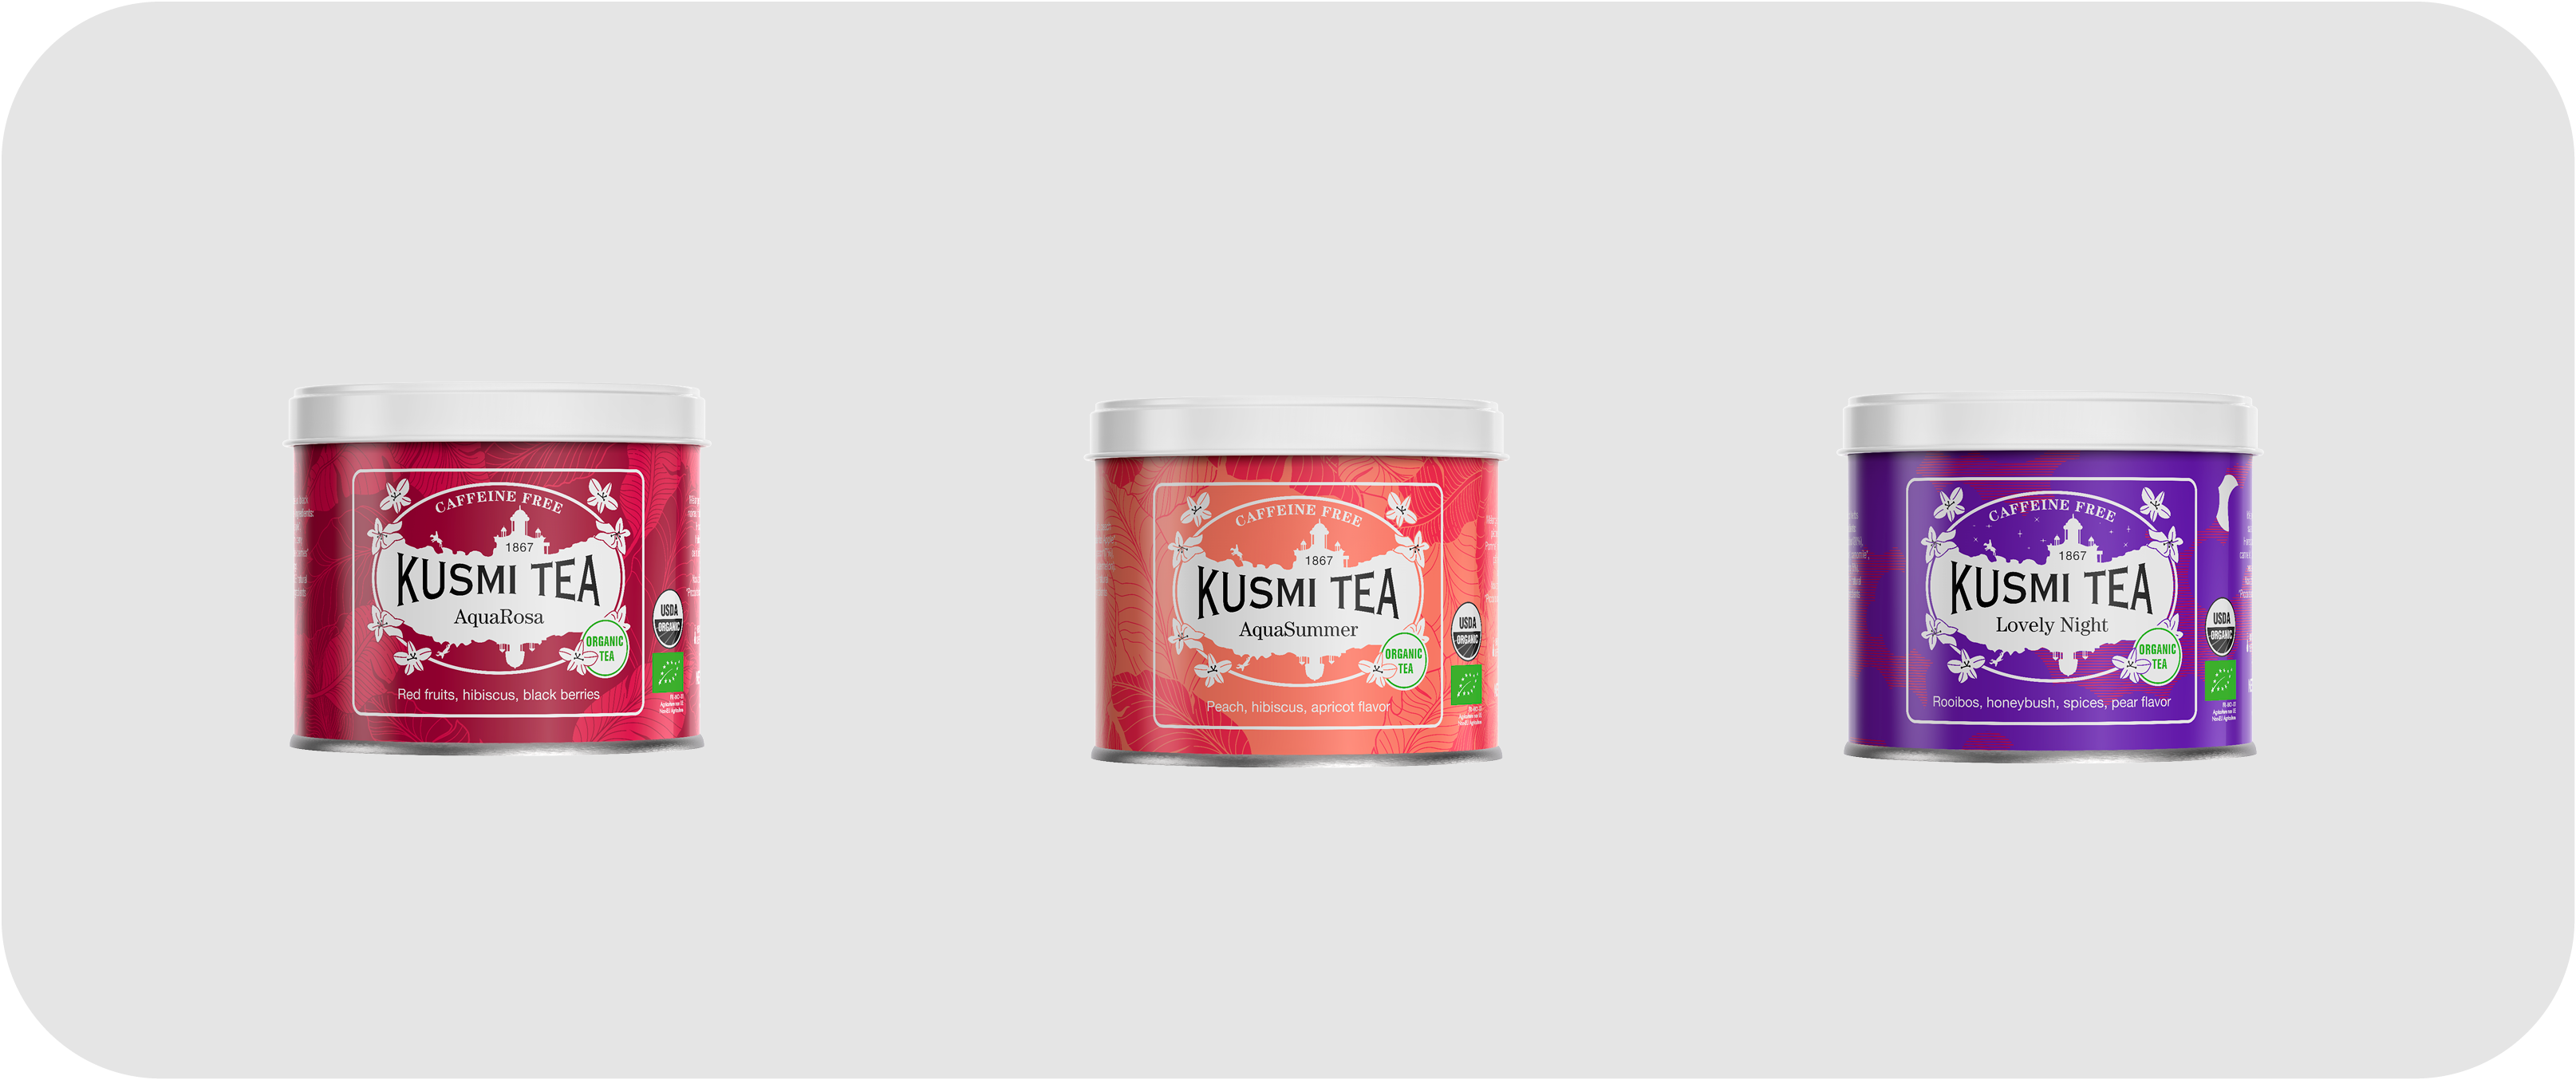 Kusmi Wellness Tea Loose Leaf Selection